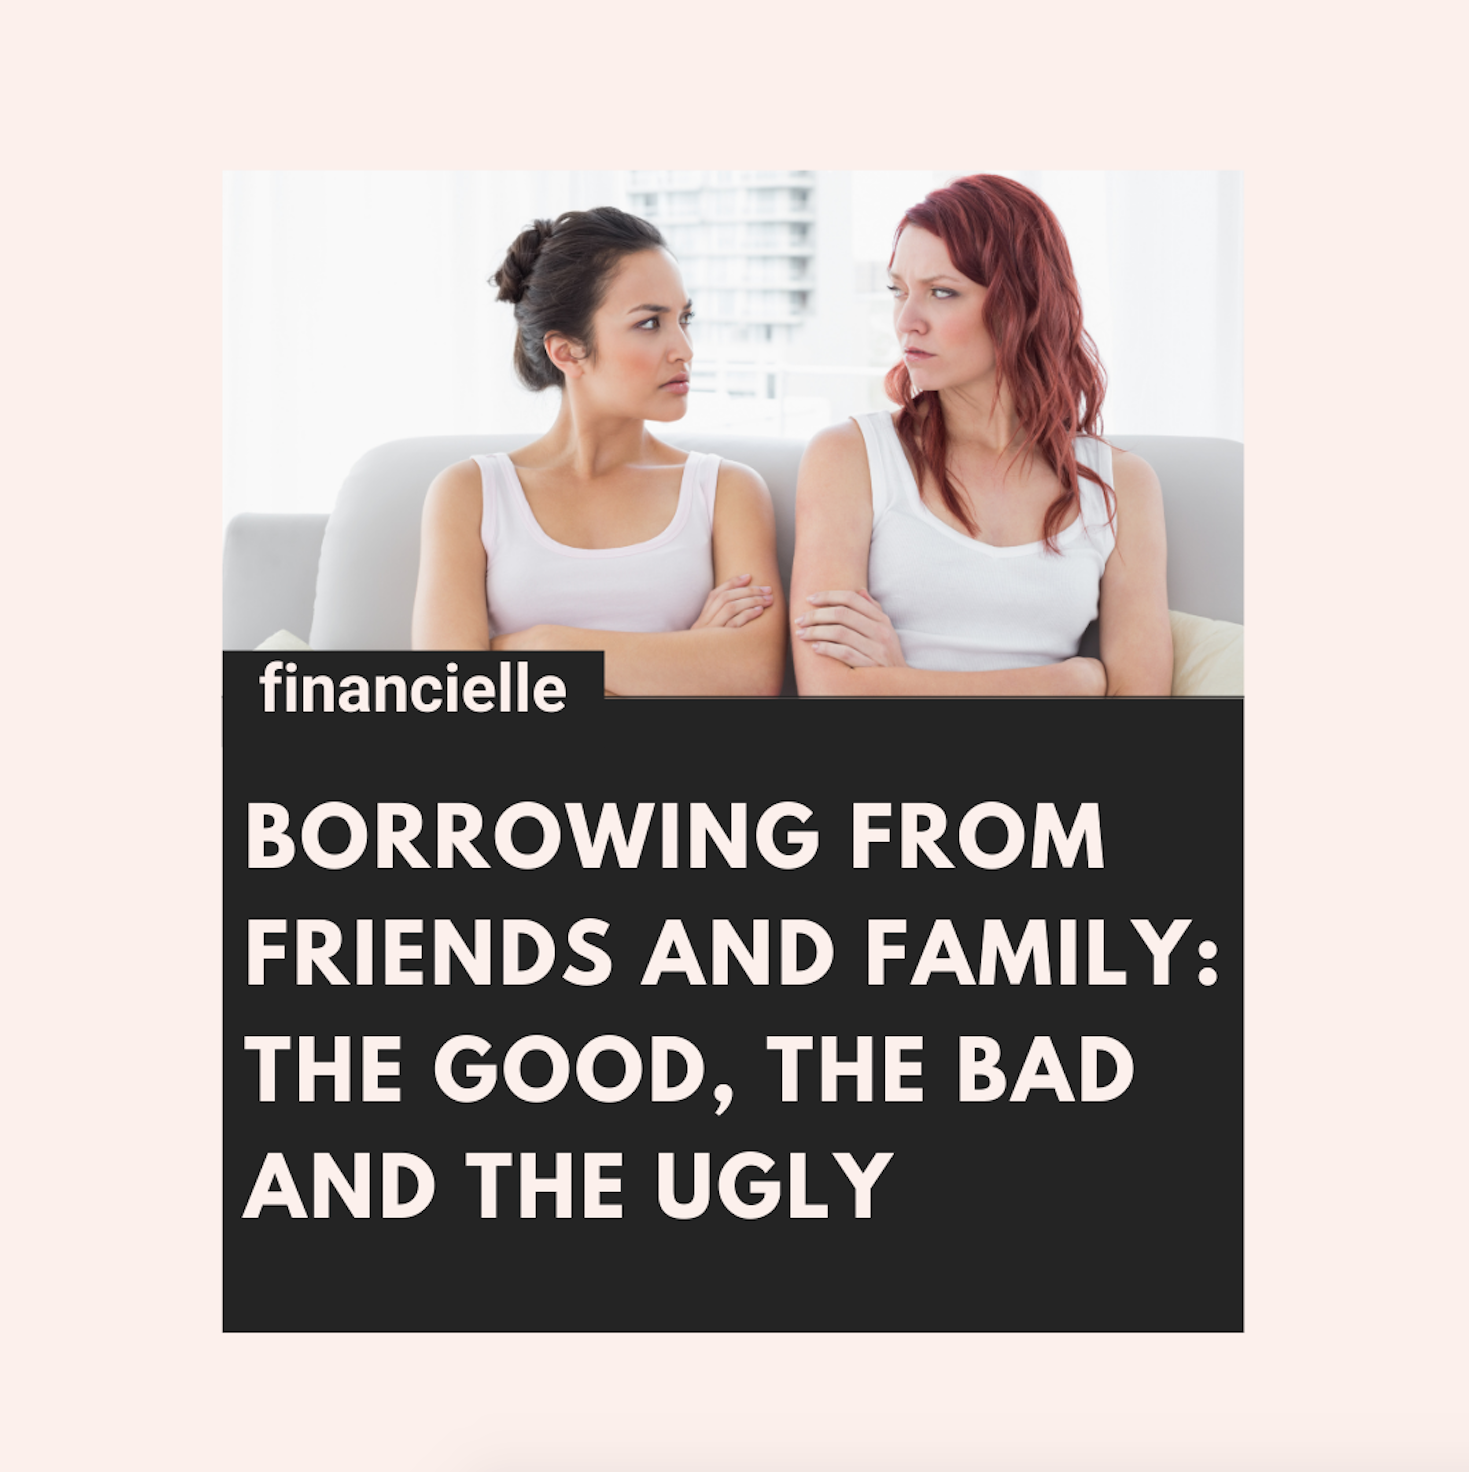 borrow money from friends and family|borrowing money from friends and family